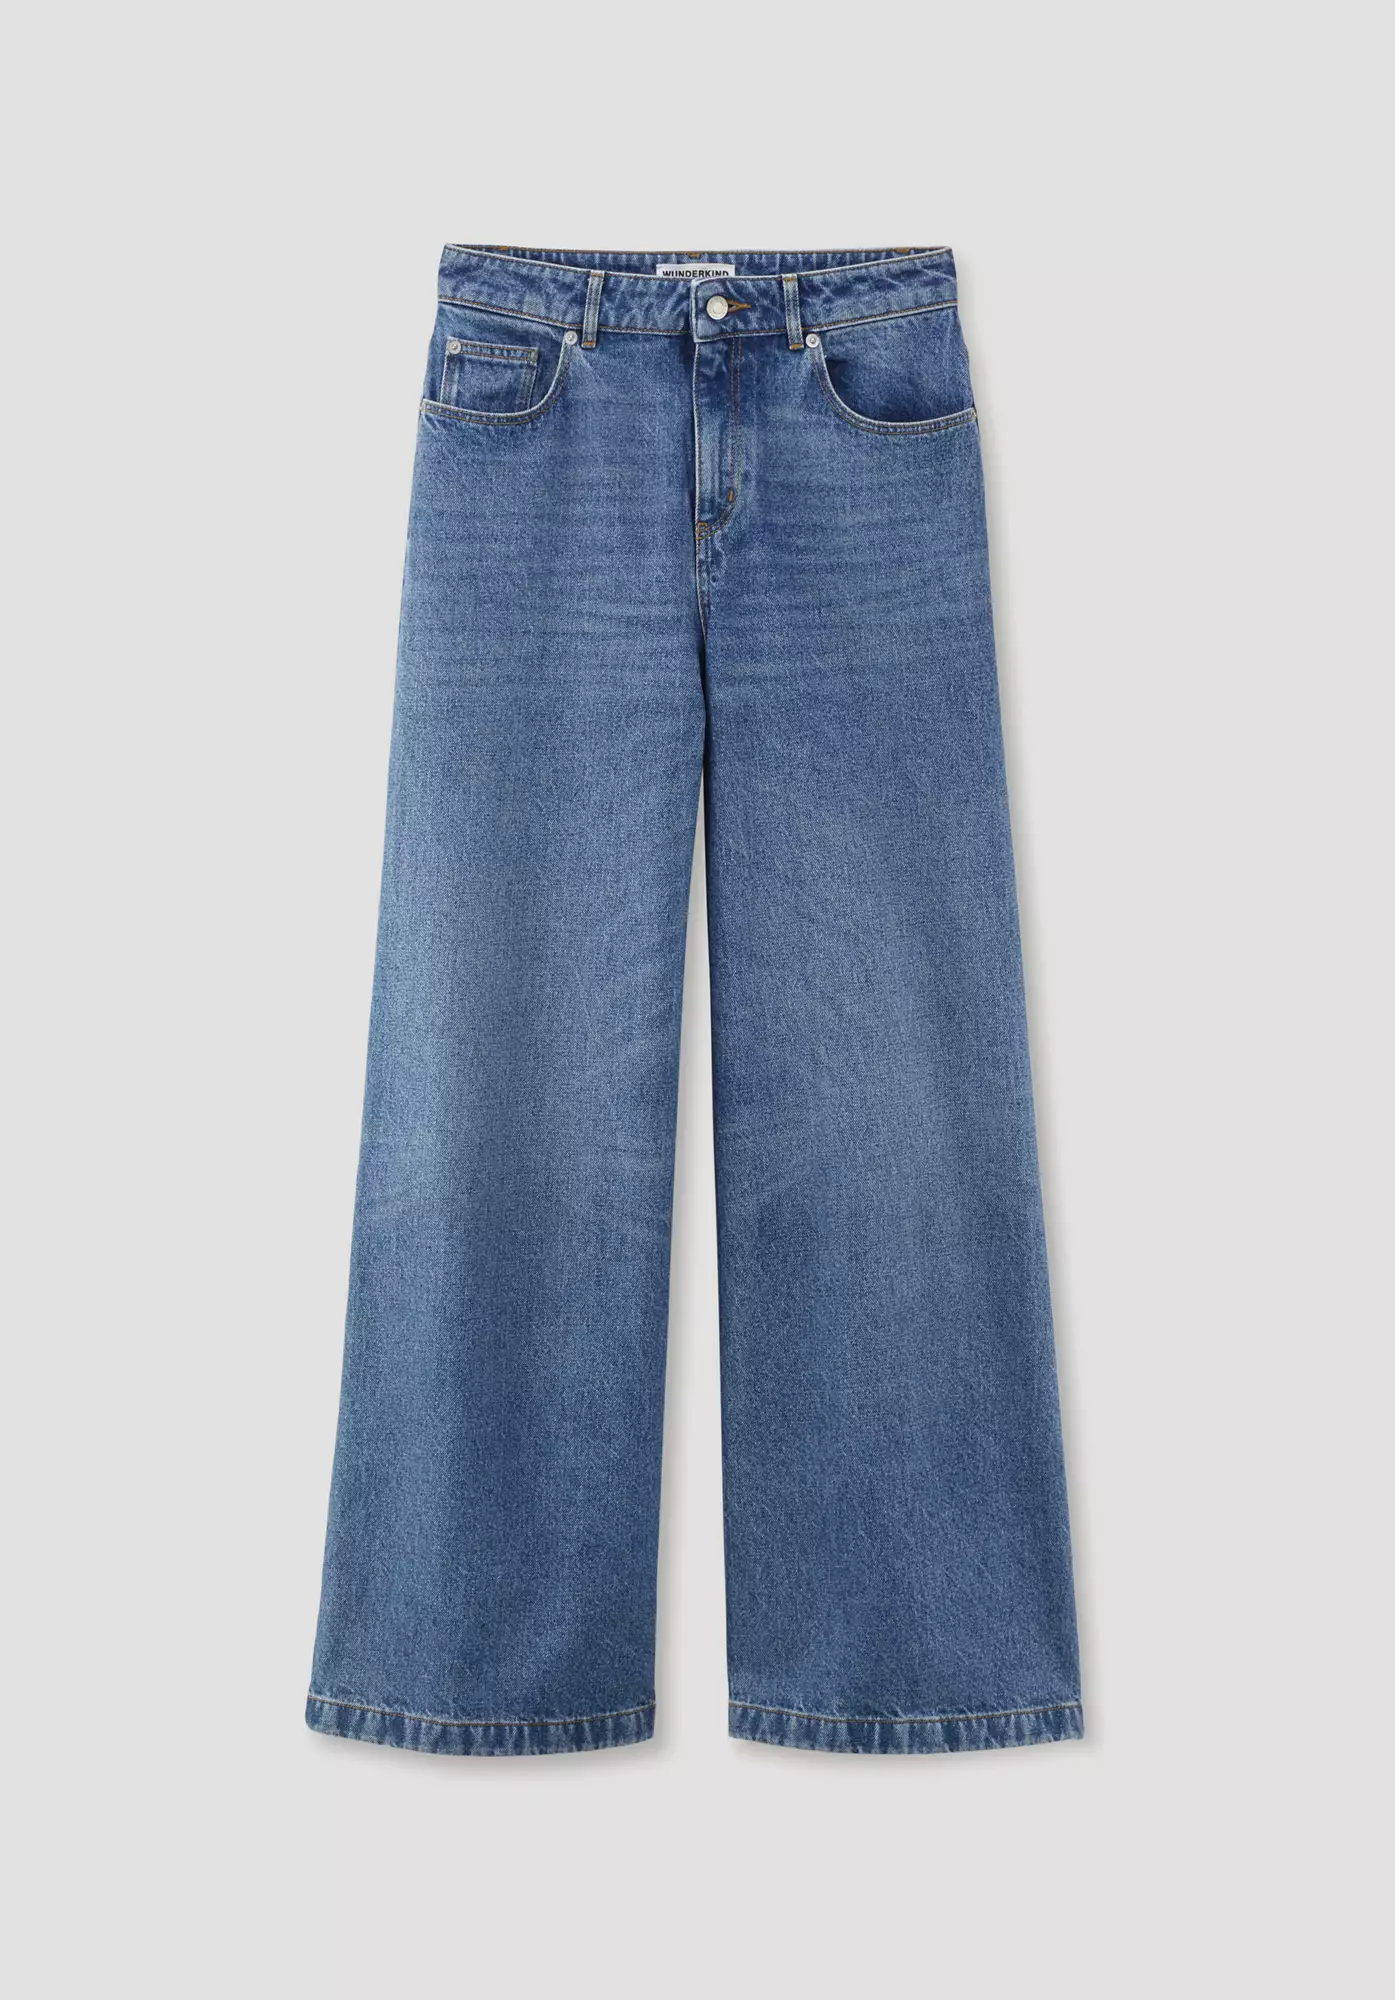 WUNDERKIND X HESSNATUR Jeans High Rise Flared aus reinem Bio-Denim - 4